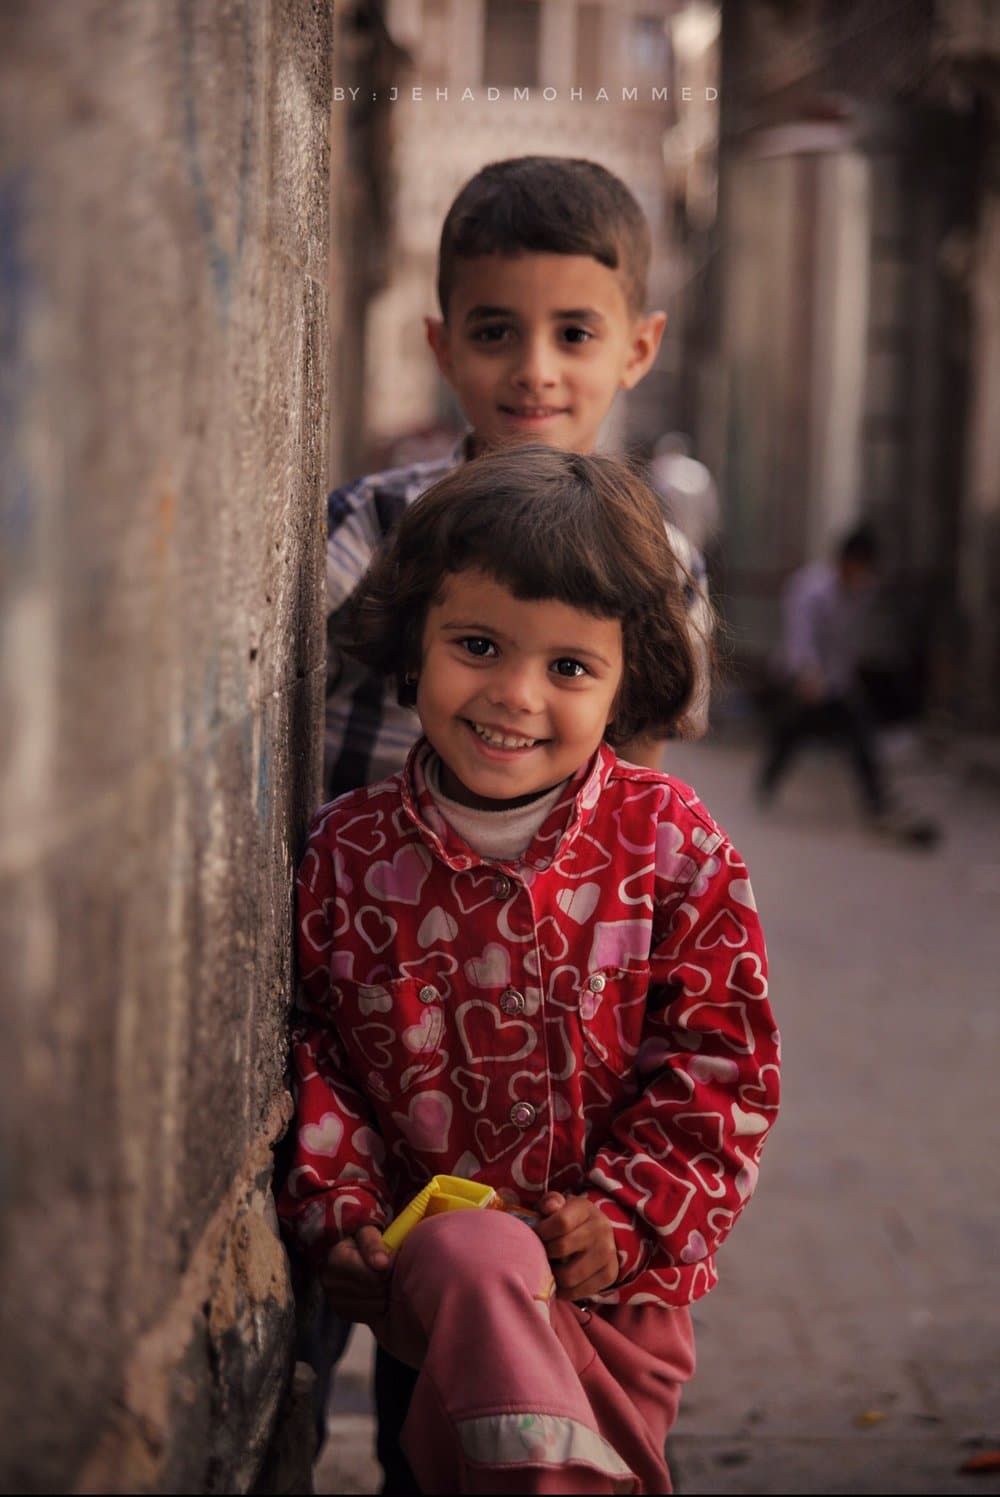 وجهين لطفلين في شوارع صنعاء القديمة - جهاد